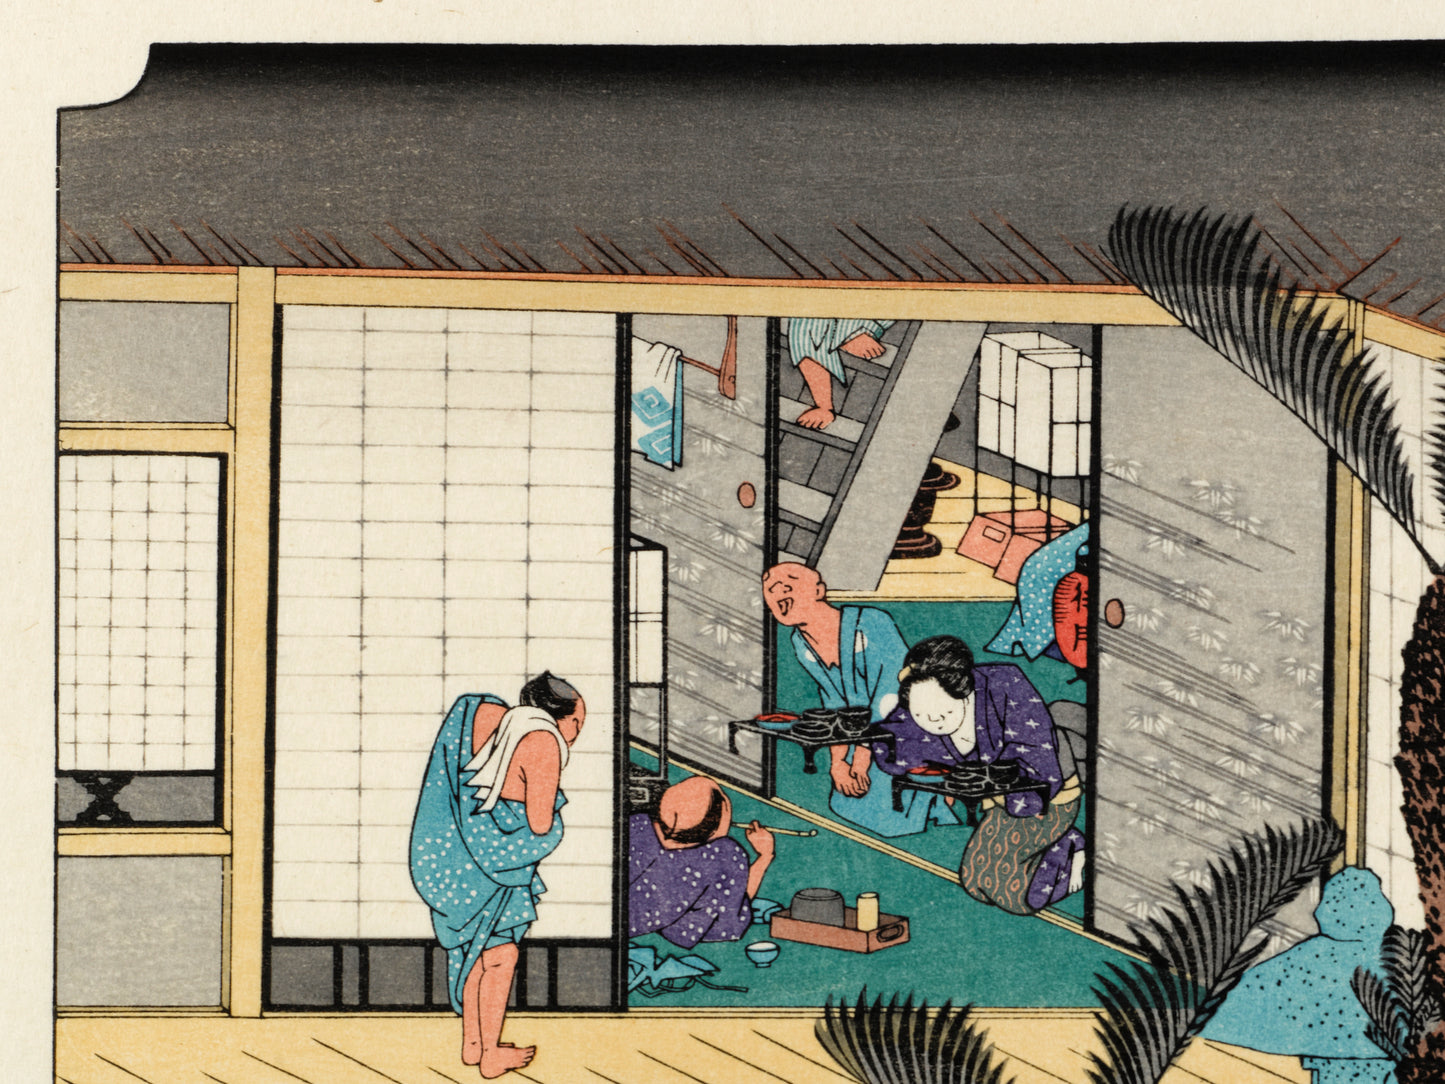 estampe japonaise intérieur d'une auberge avec voyageurs et geishas, homme en kimono de bain